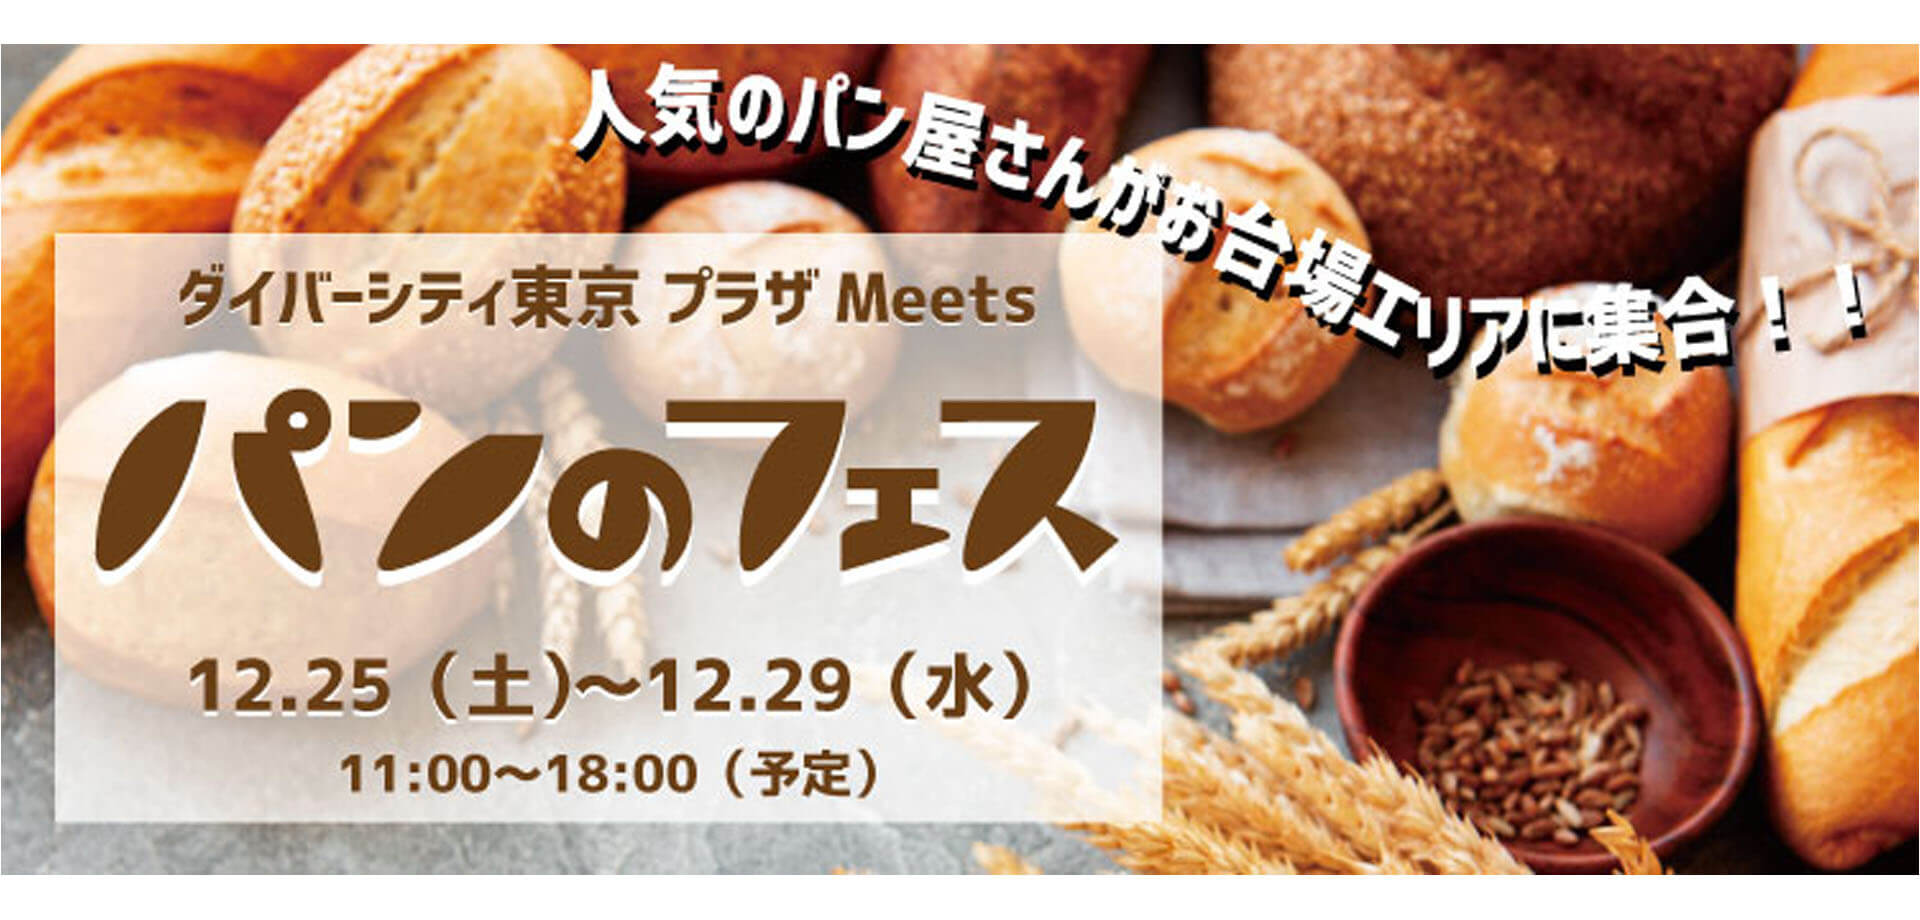 「ダイバーシティ東京 プラザ Meets パンのフェス」